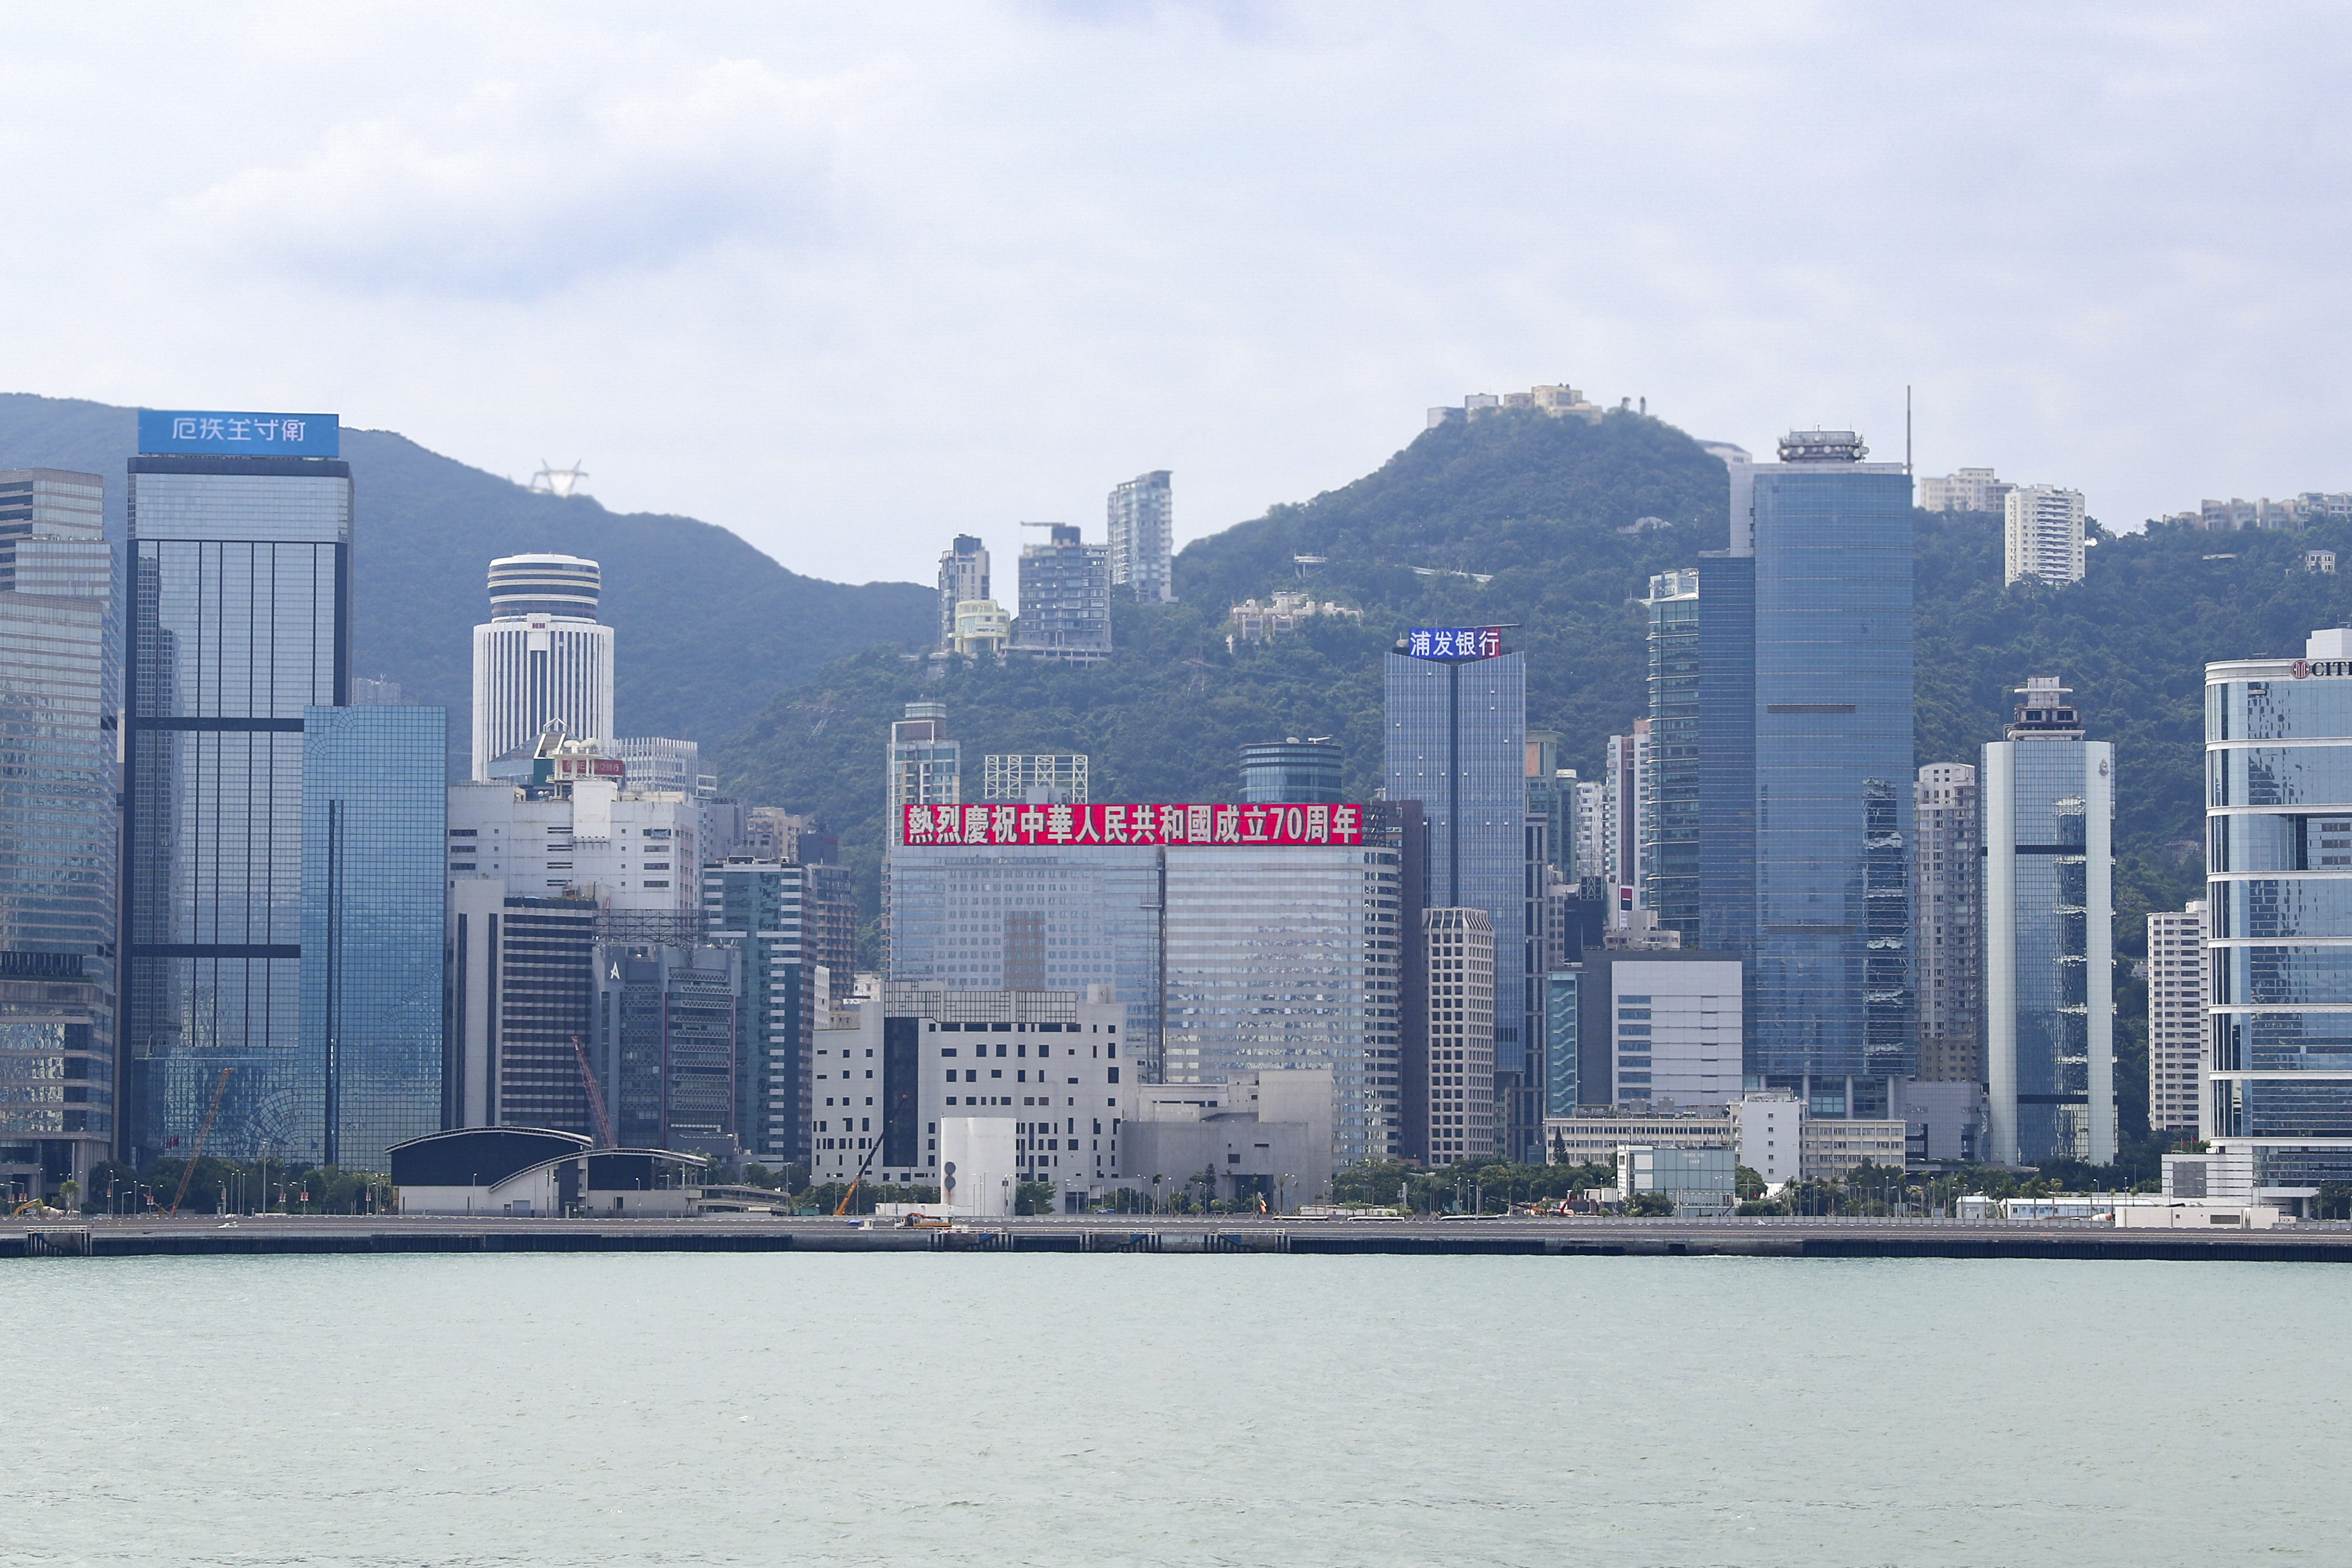 礼赞新中国!恒大香港总部大楼打出巨幅庆祝国庆标语 许家印现场检查